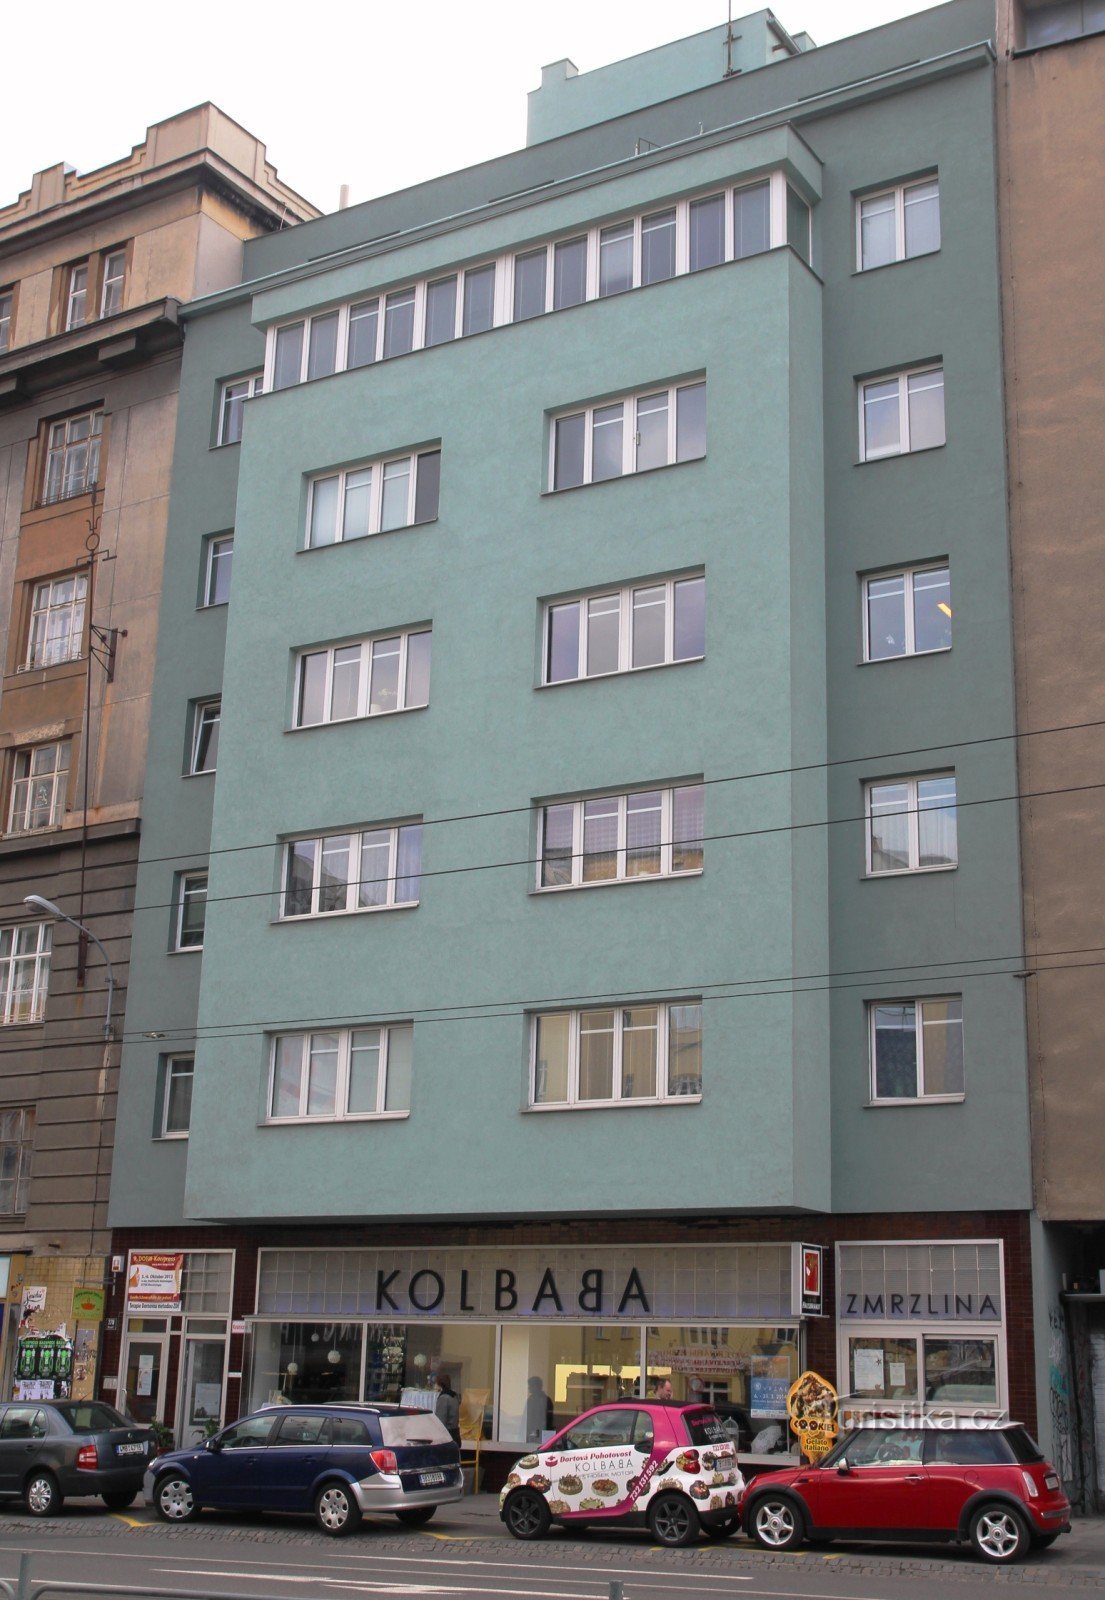 Kolbaba lejehus på Kounicová gaden